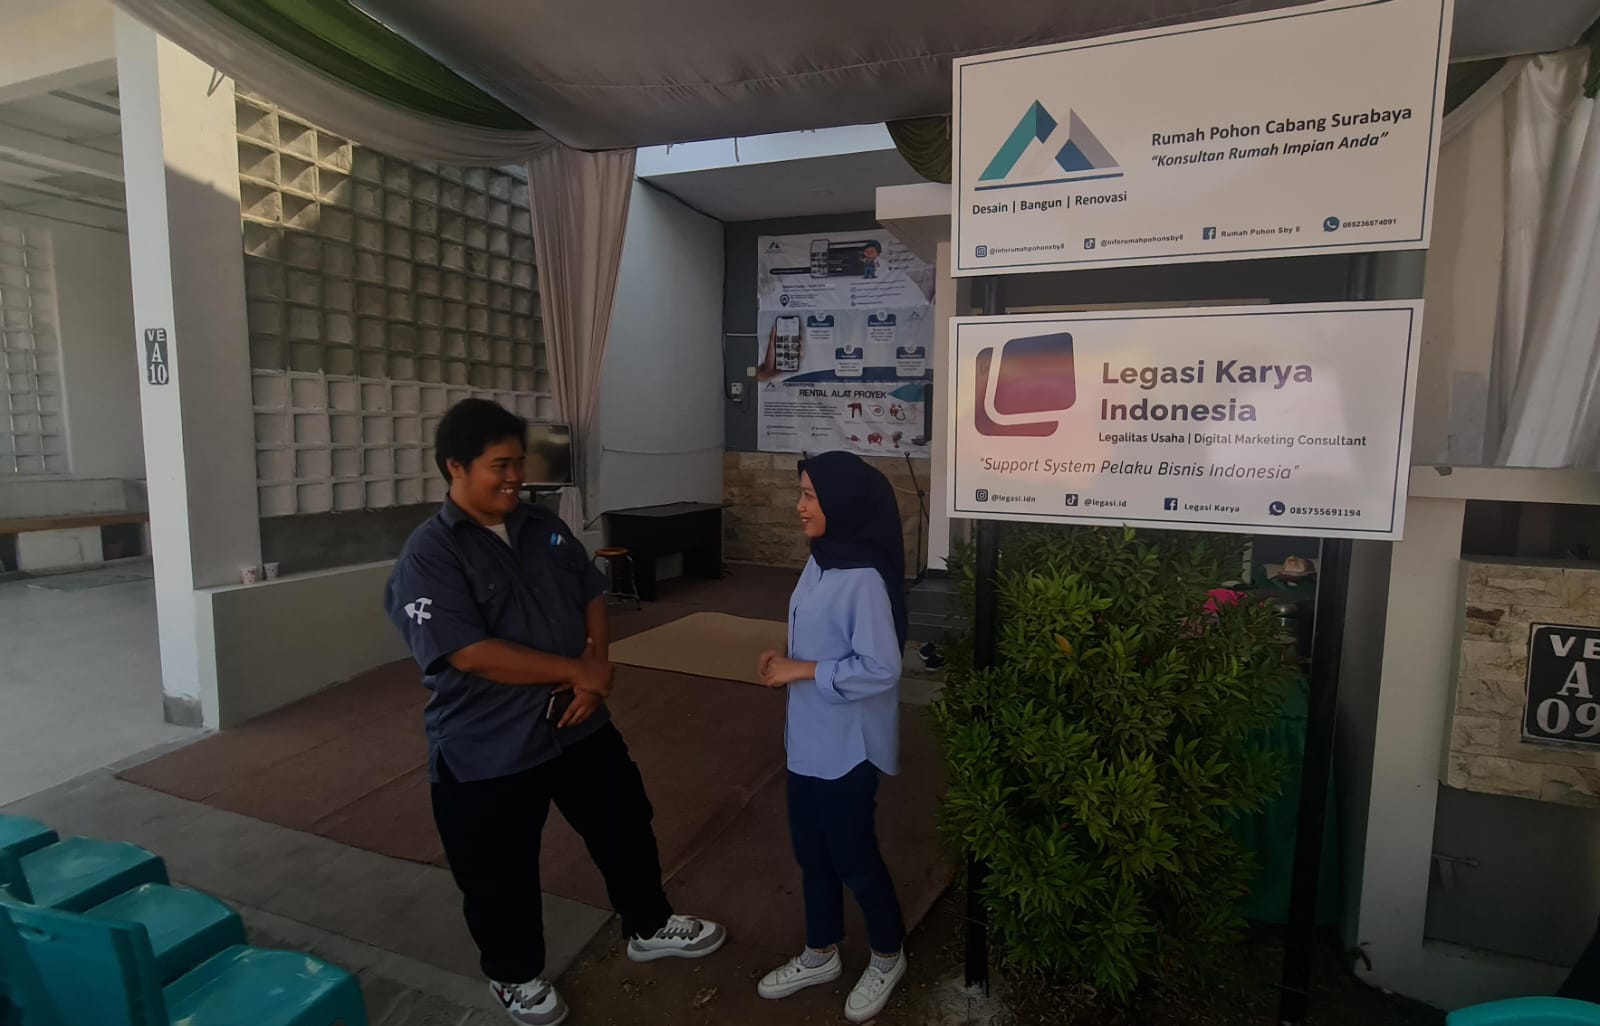 Rumah Pohon dan Legasi Karya Indonesia Siap Dampingi Peminat Properti dan Pelaku Usaha di Surabaya